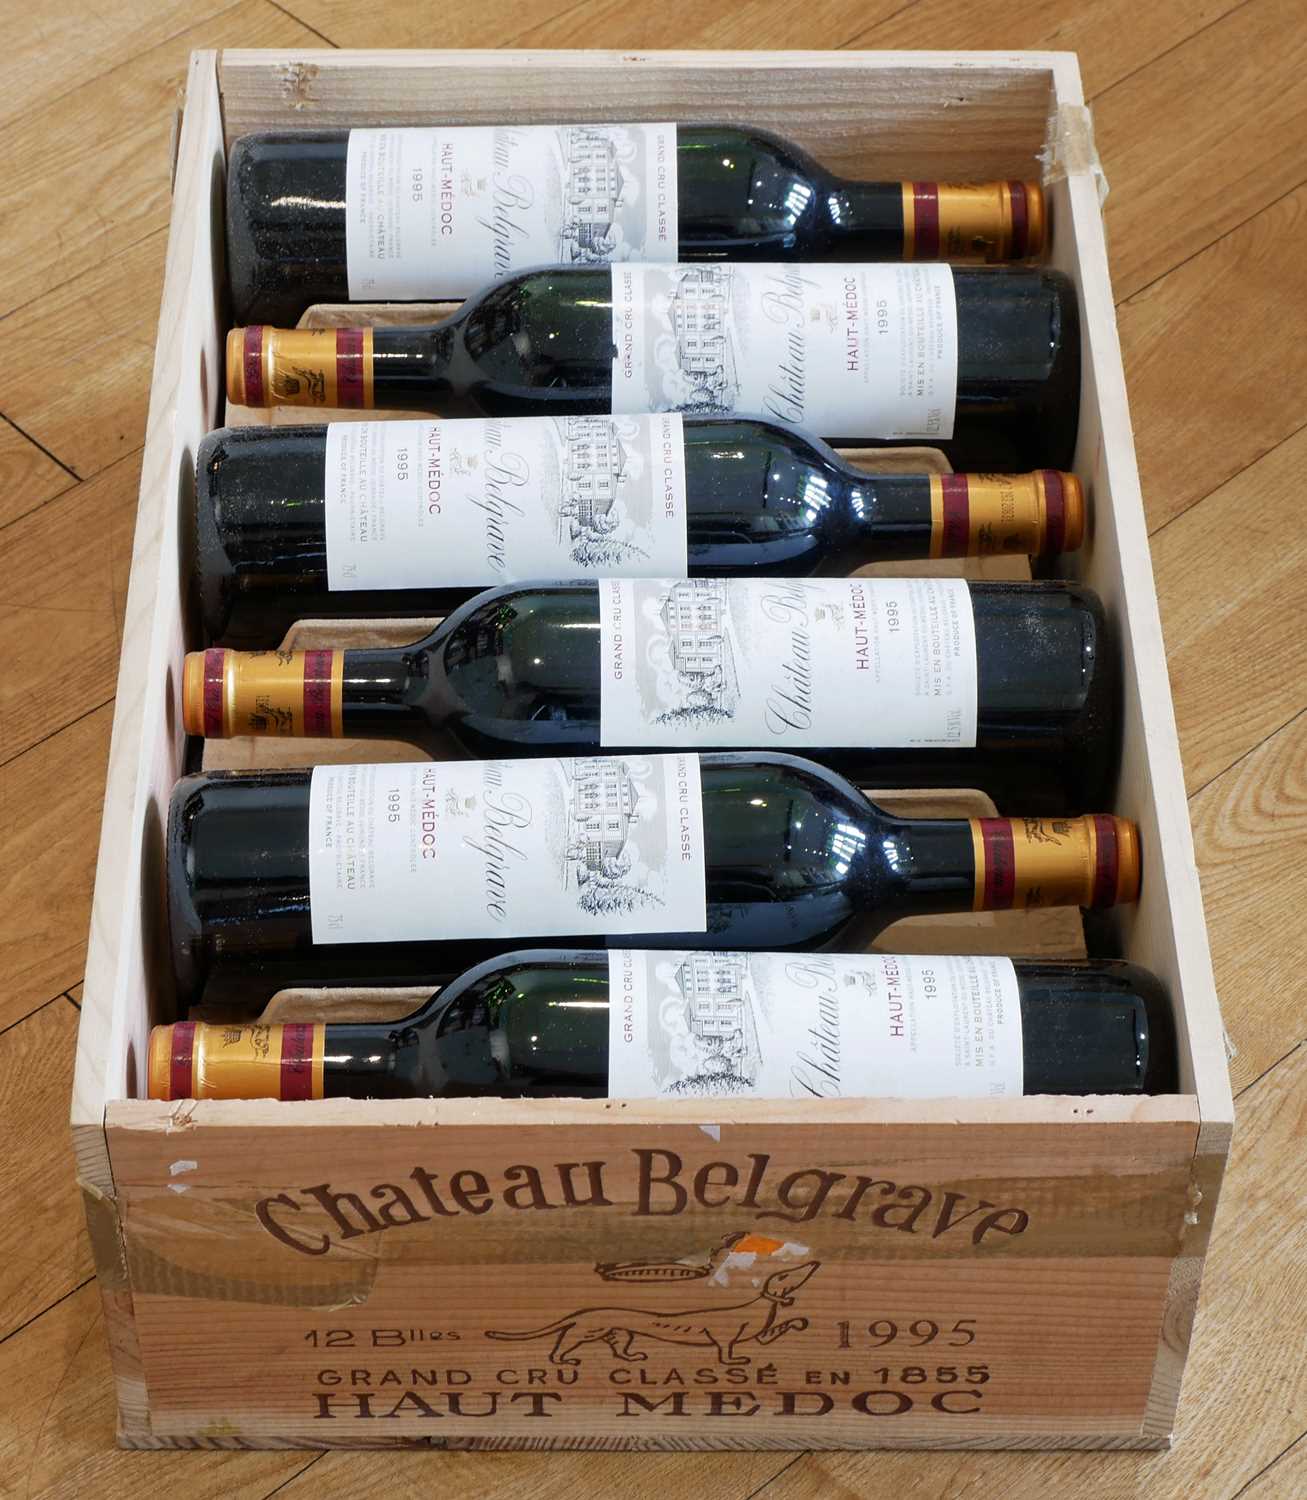 12 bottles in original wooden case Chateau Belgrave Grand Cru Classe Haut Medoc 1995